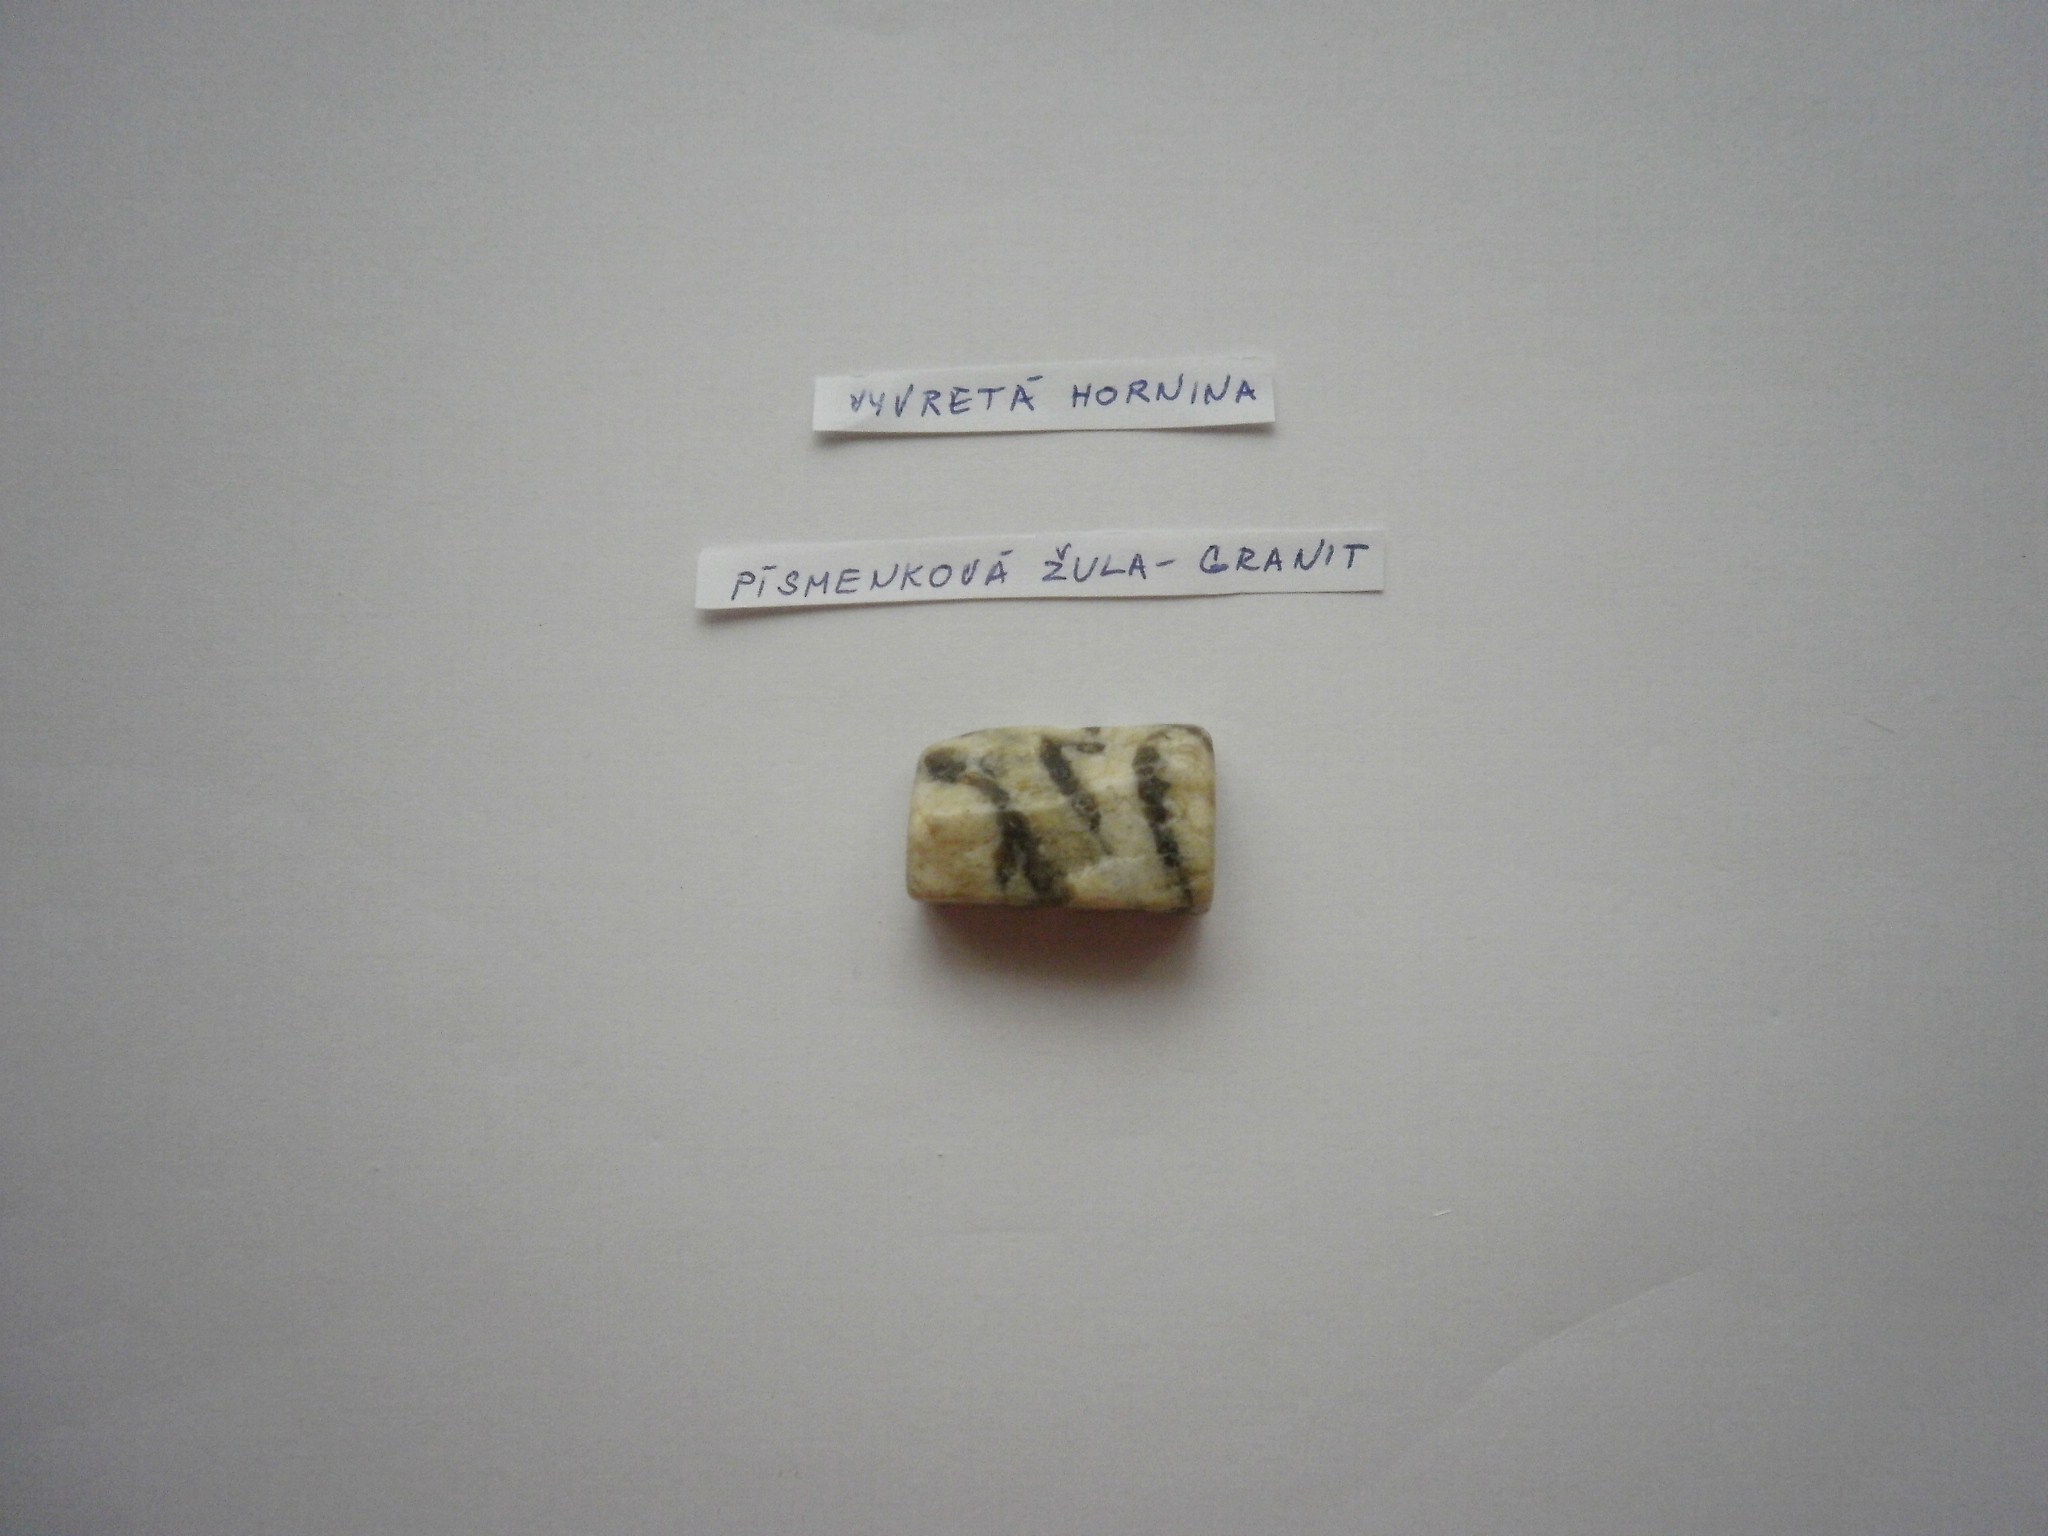 Vyvretá hornina - písmenková žula-granit